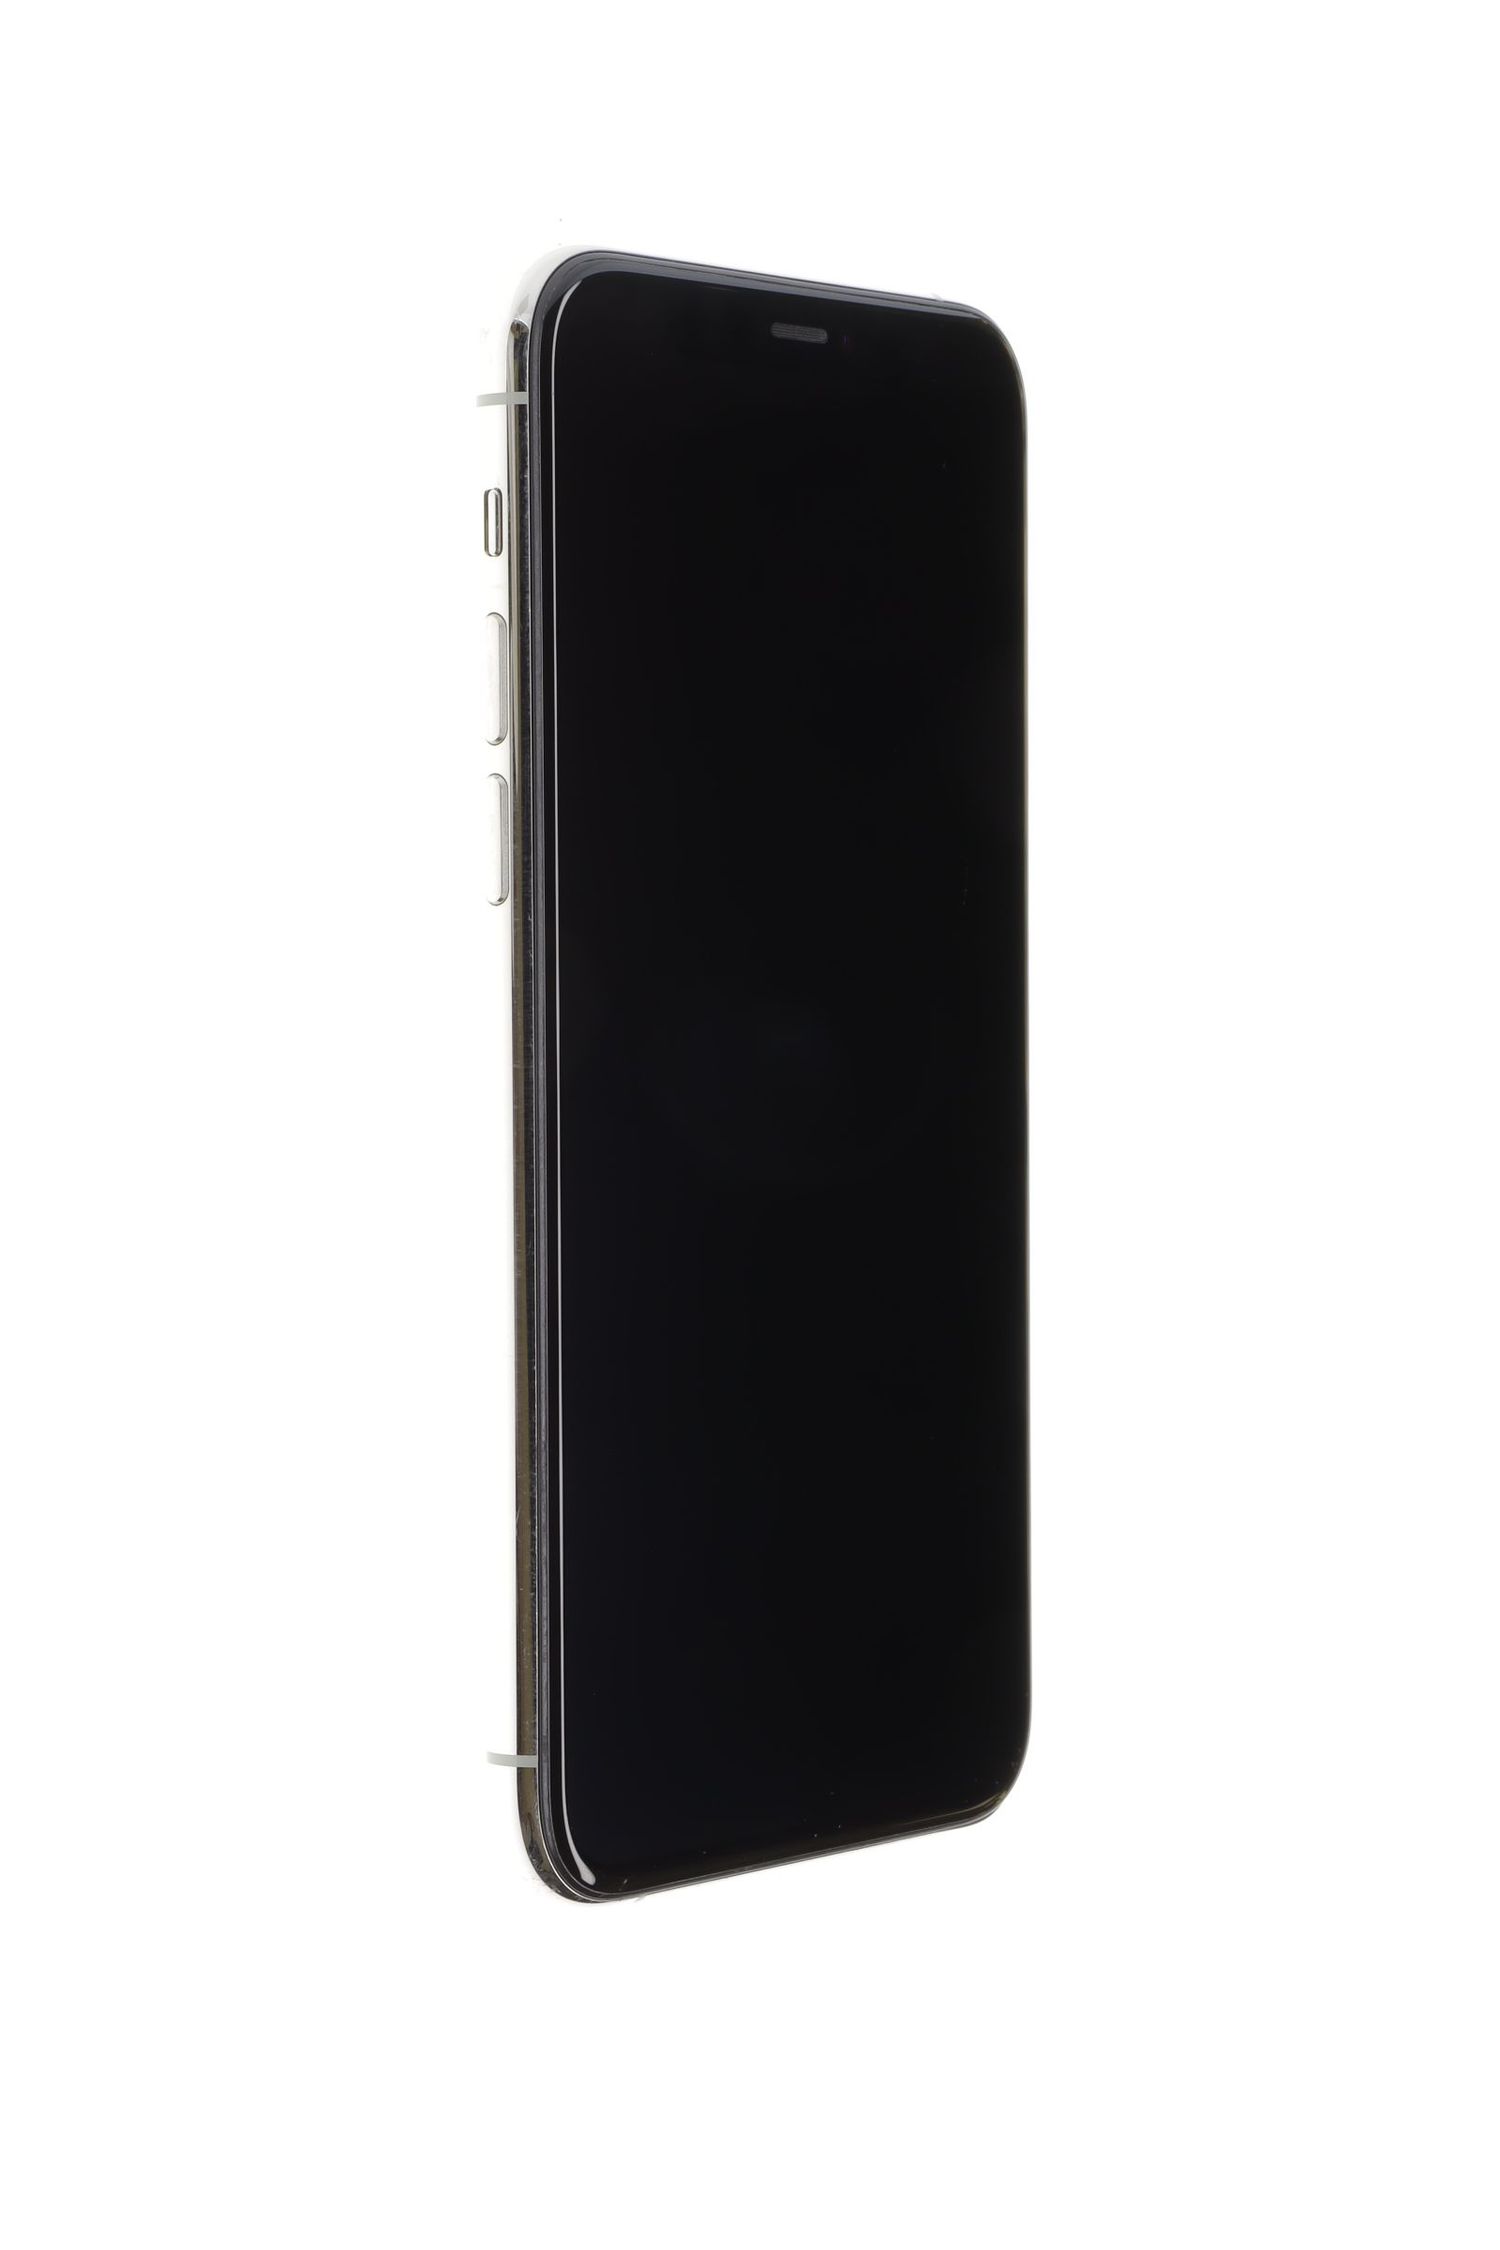 Mobiltelefon Apple iPhone 11 Pro, Silver, 64 GB, Foarte Bun